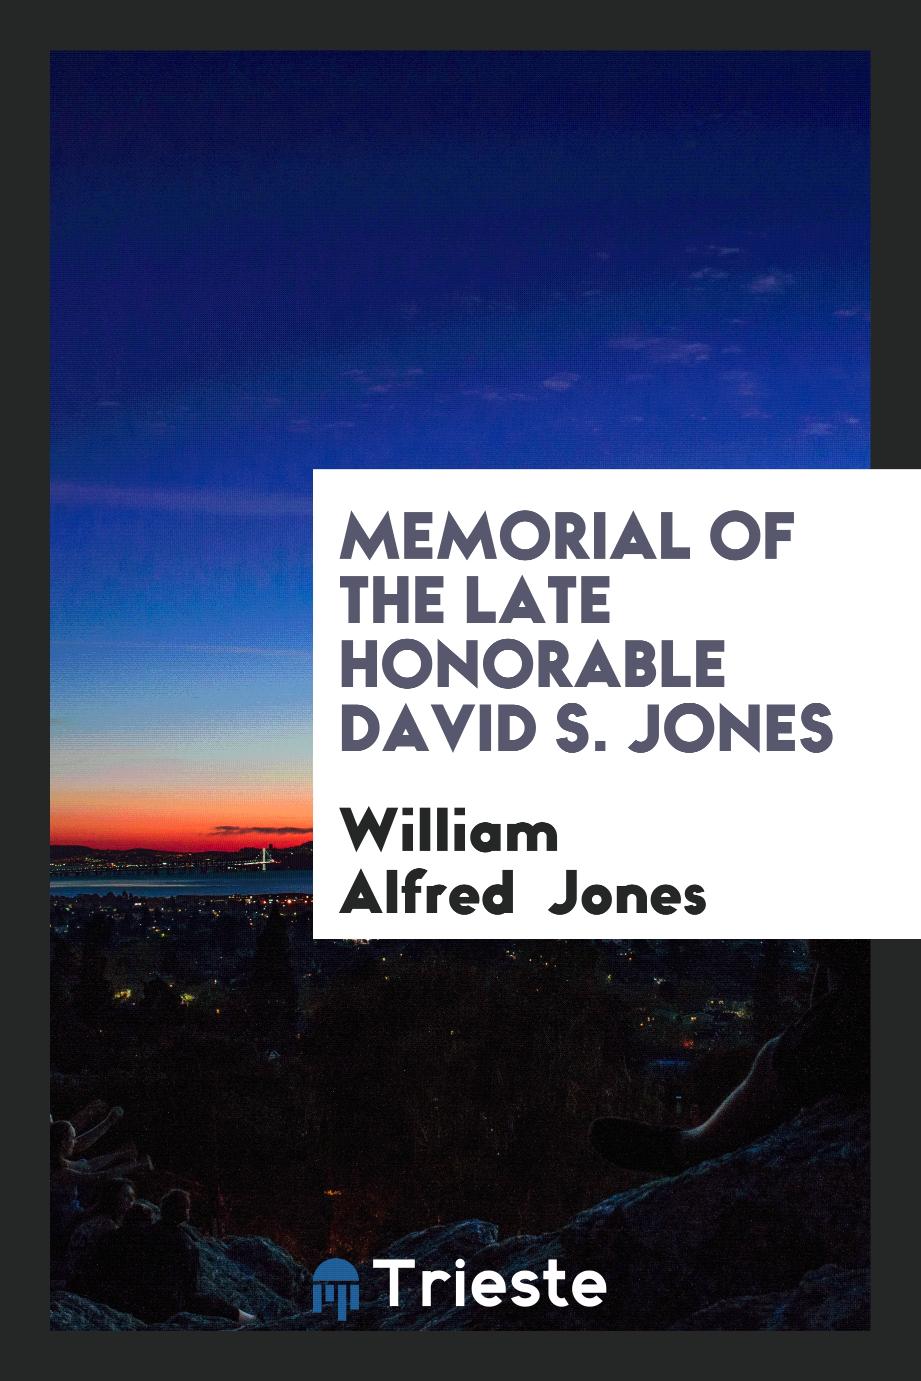 Memorial of the Late Honorable David S. Jones